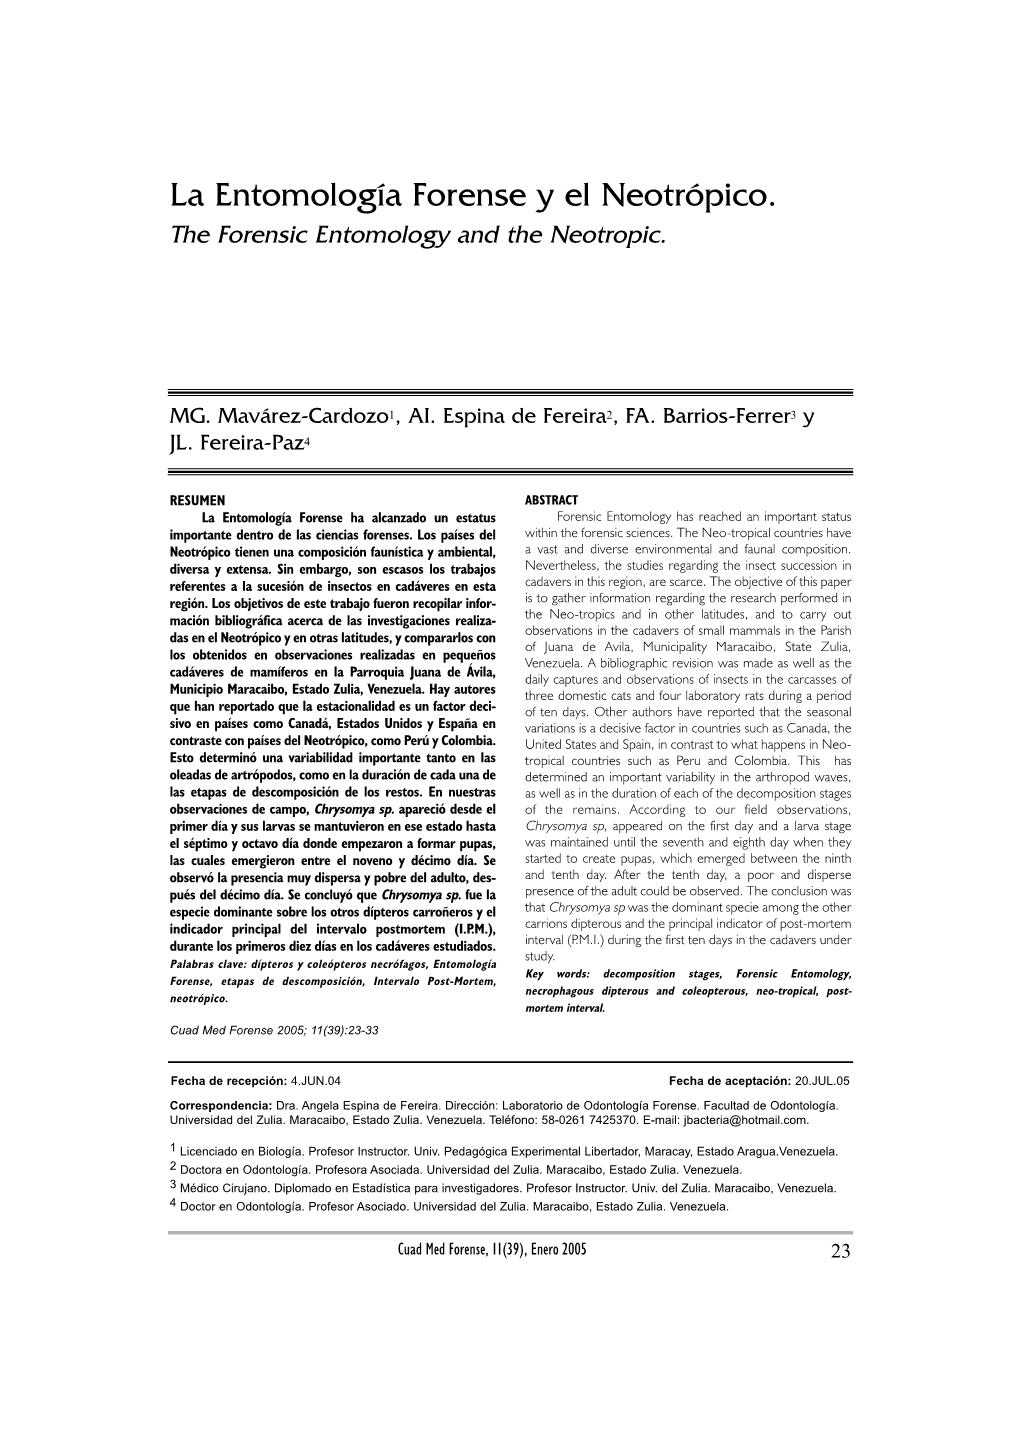 La Entomología Forense Y El Neotrópico. the Forensic Entomology and the Neotropic